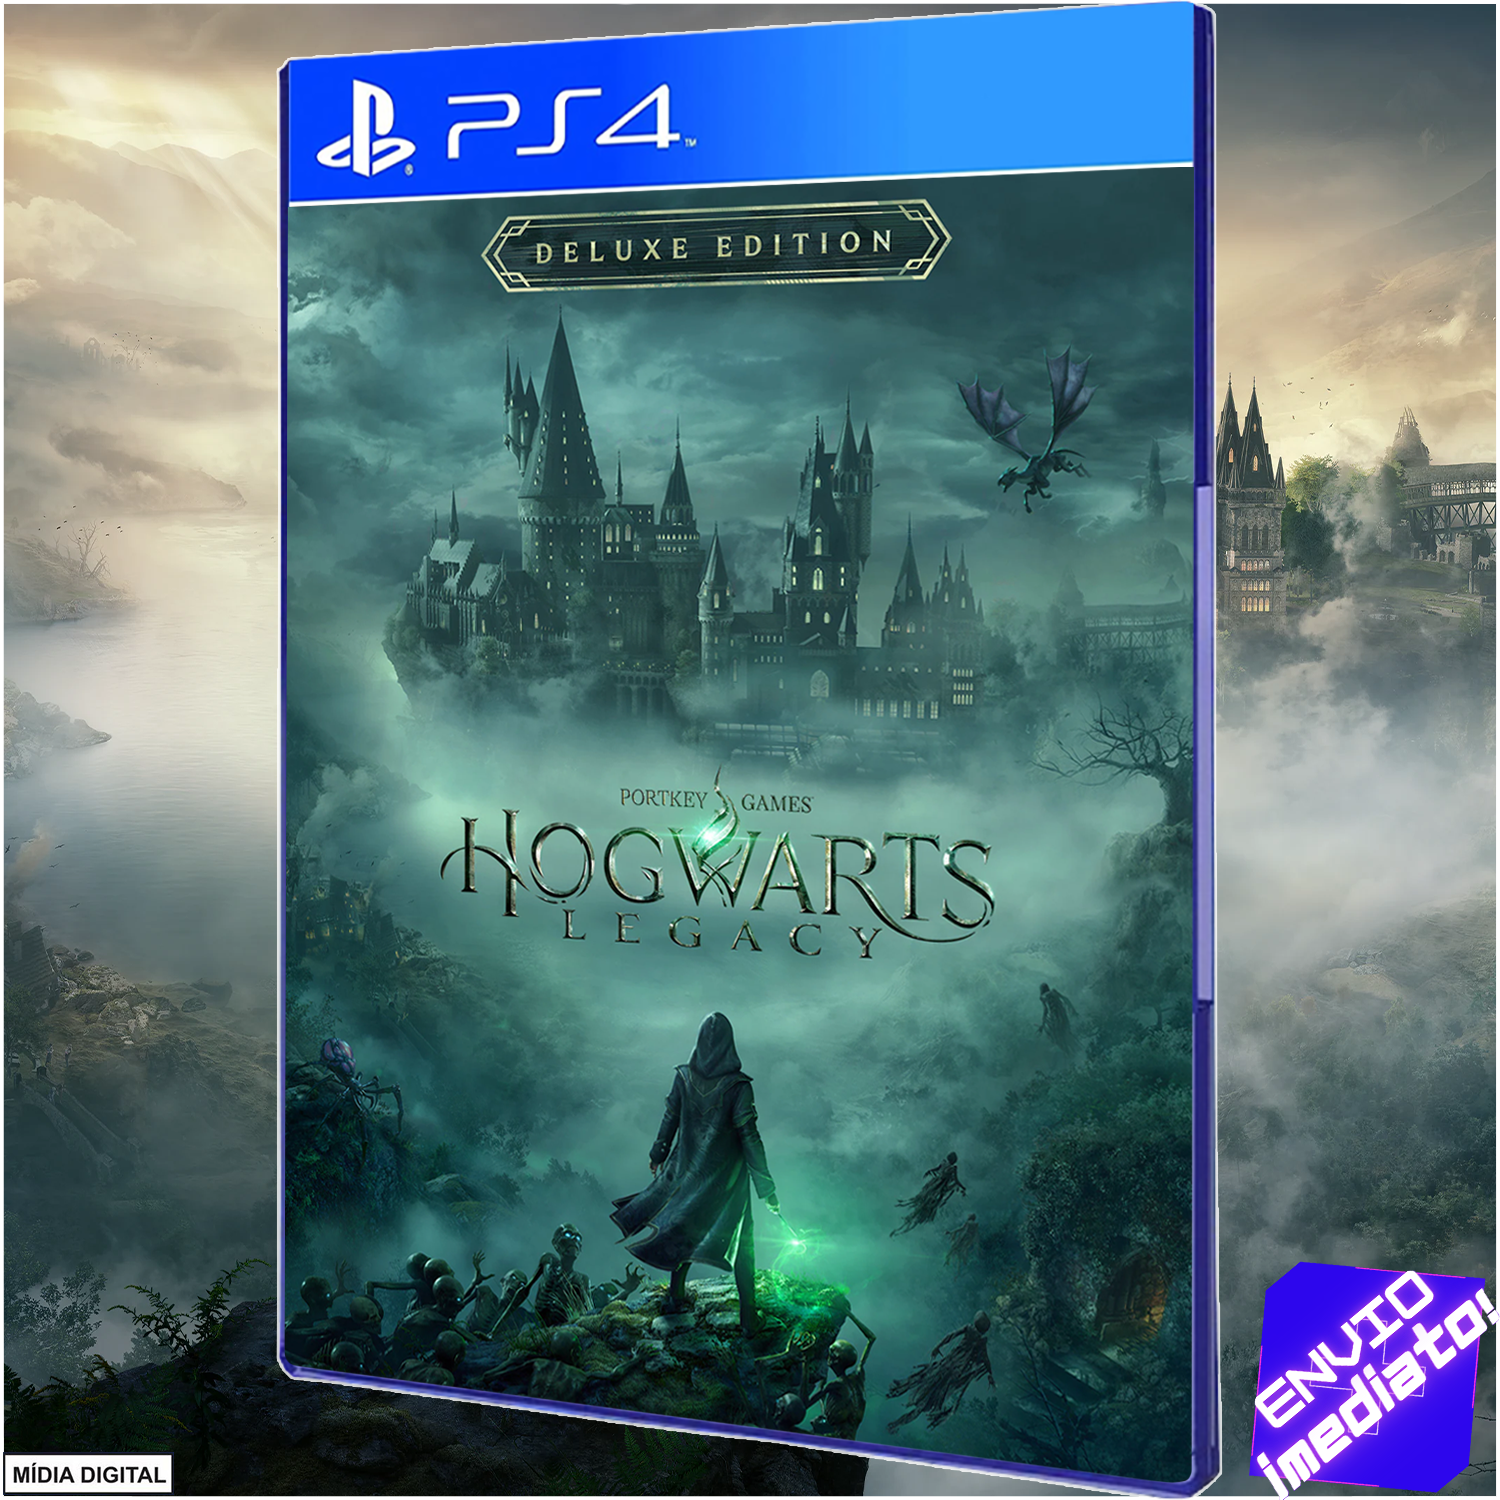 Hogwarts Legacy - PS4 Mídia Física - Mundo Joy Games - Venda, Compra e  Assistência em Games e Informática